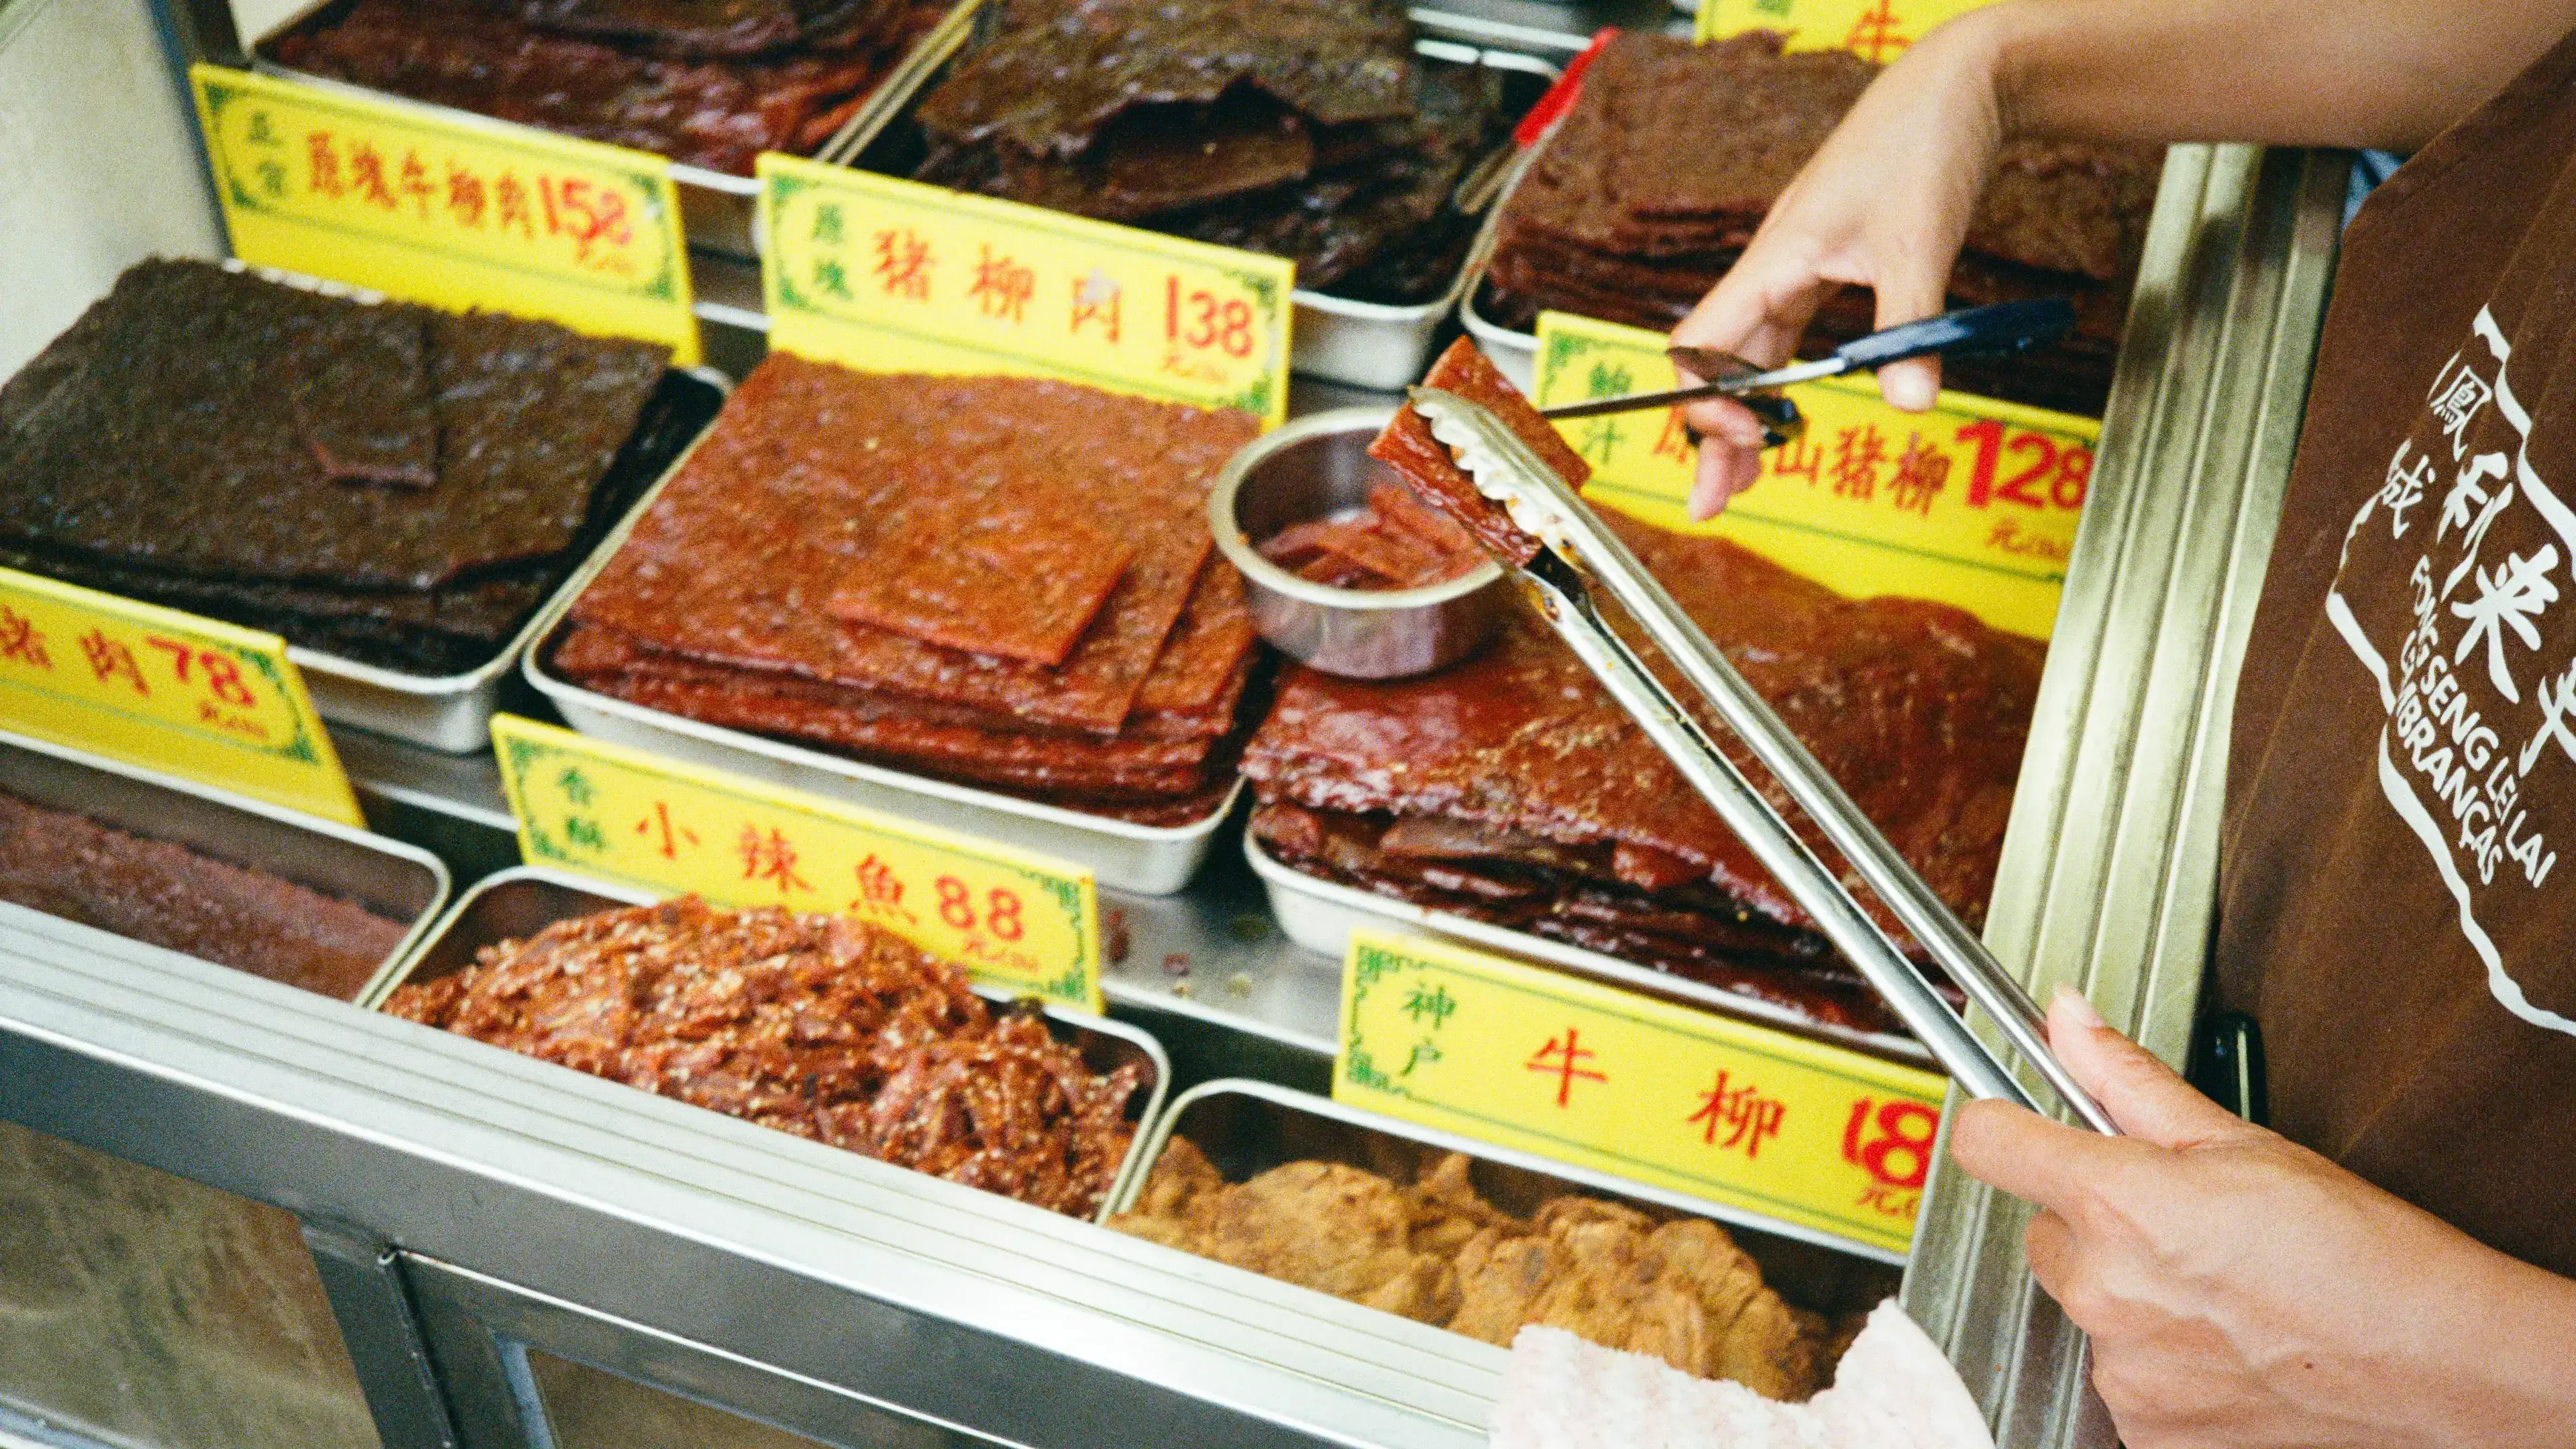 Macau food market